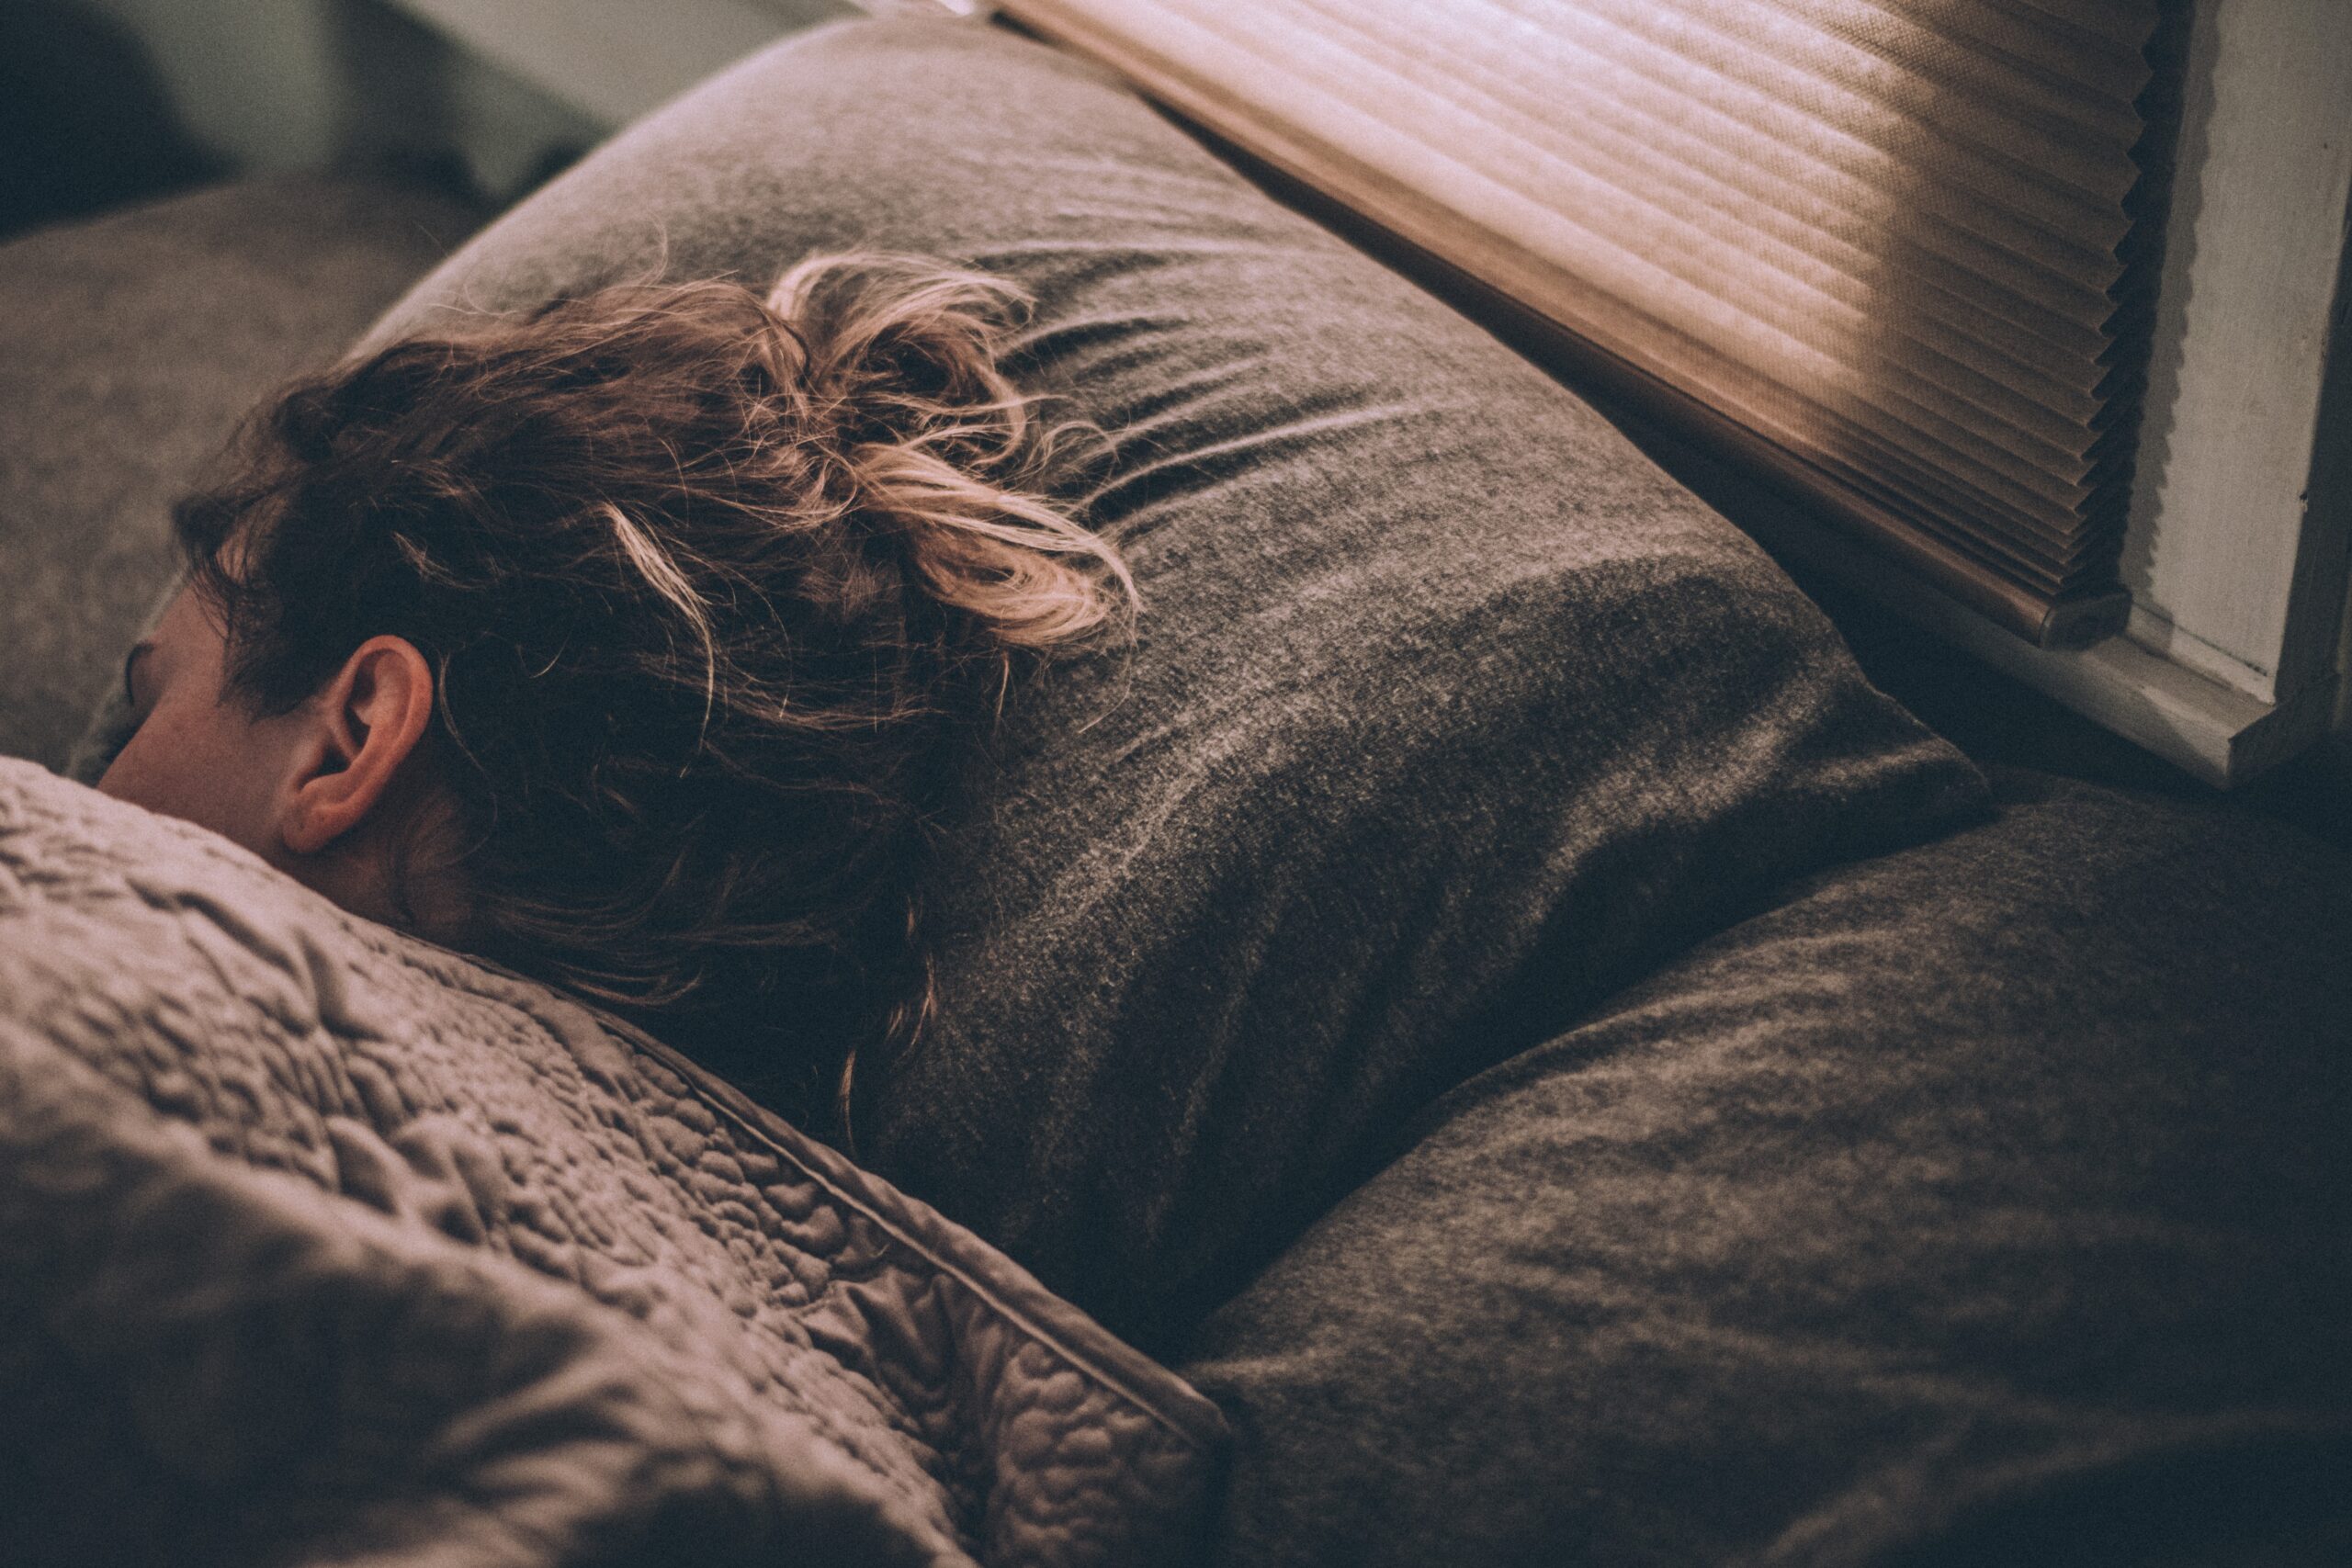 Jak spolu souvisí spánek a imunita? Víme, proč je odpočinek tak důležitý